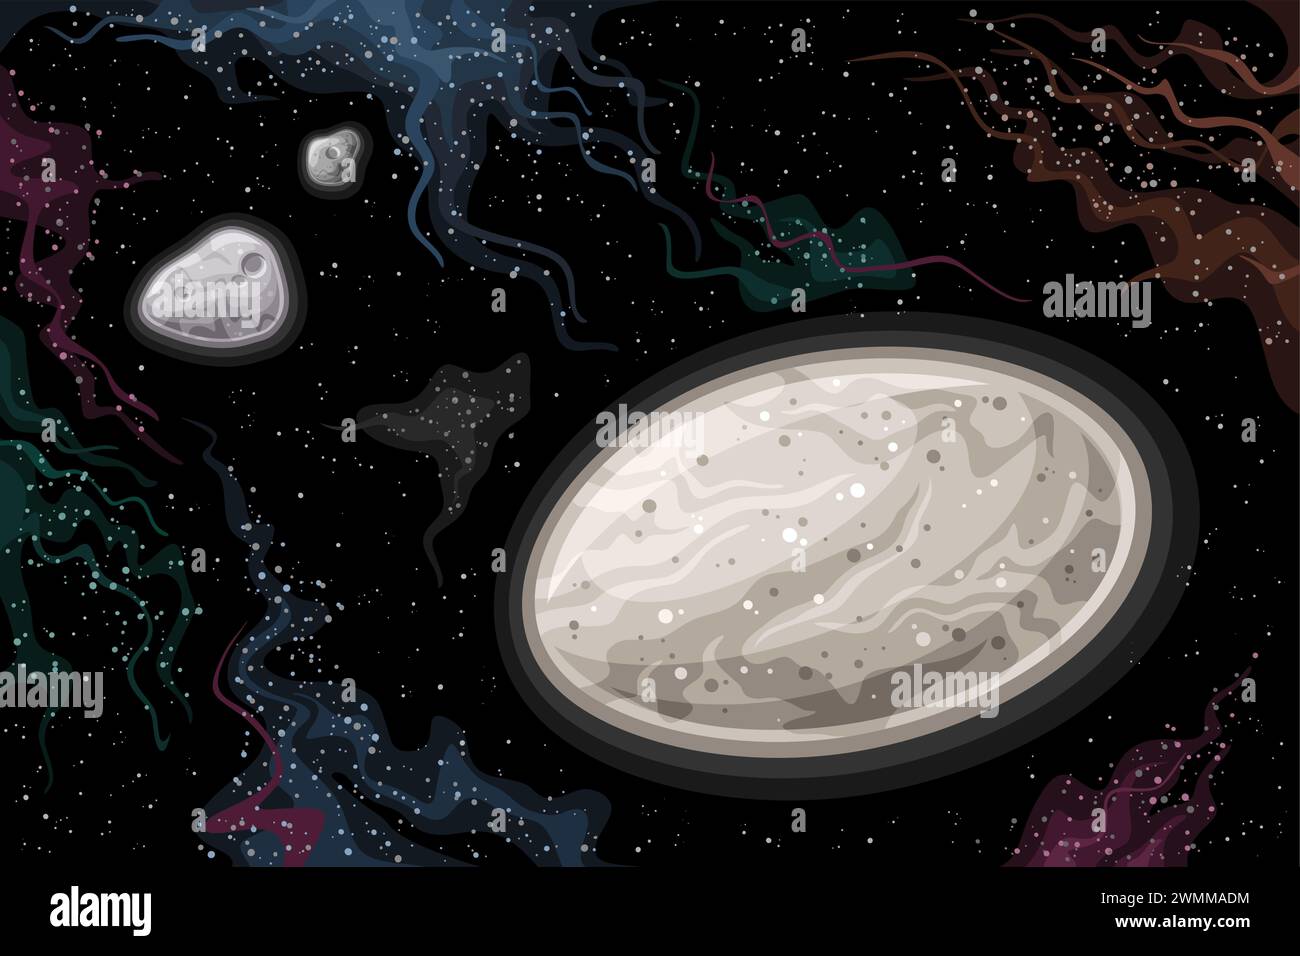 Grafico spaziale Vector Fantasy, poster orizzontale con cartoon, pianeta nano Haumea con lune Hi'iaka e Namaka nello spazio profondo, futurista decorativo Illustrazione Vettoriale